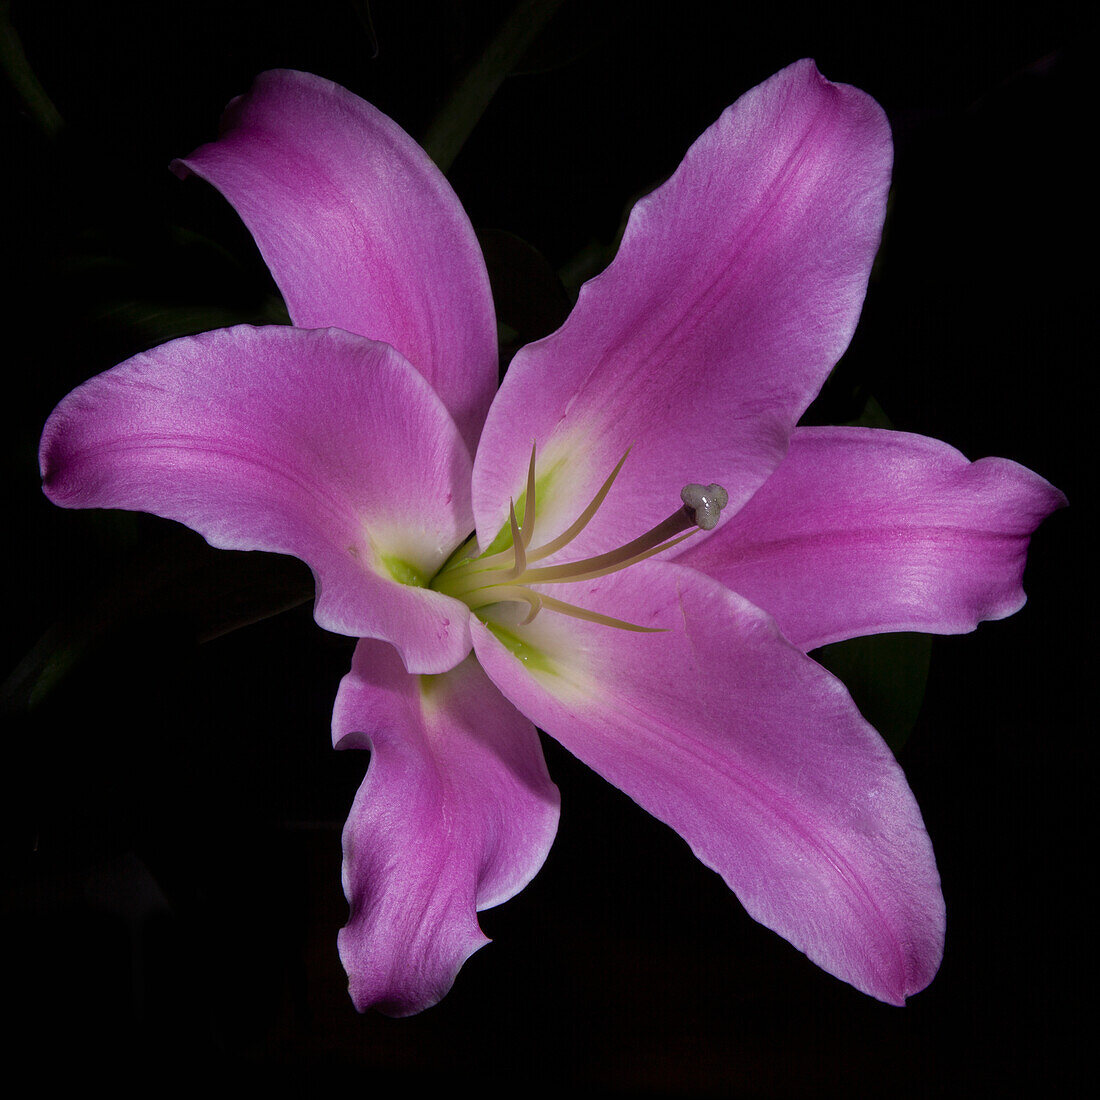 Pinke Lilie (Lilium) in voller Blüte vor schwarzem Hintergrund